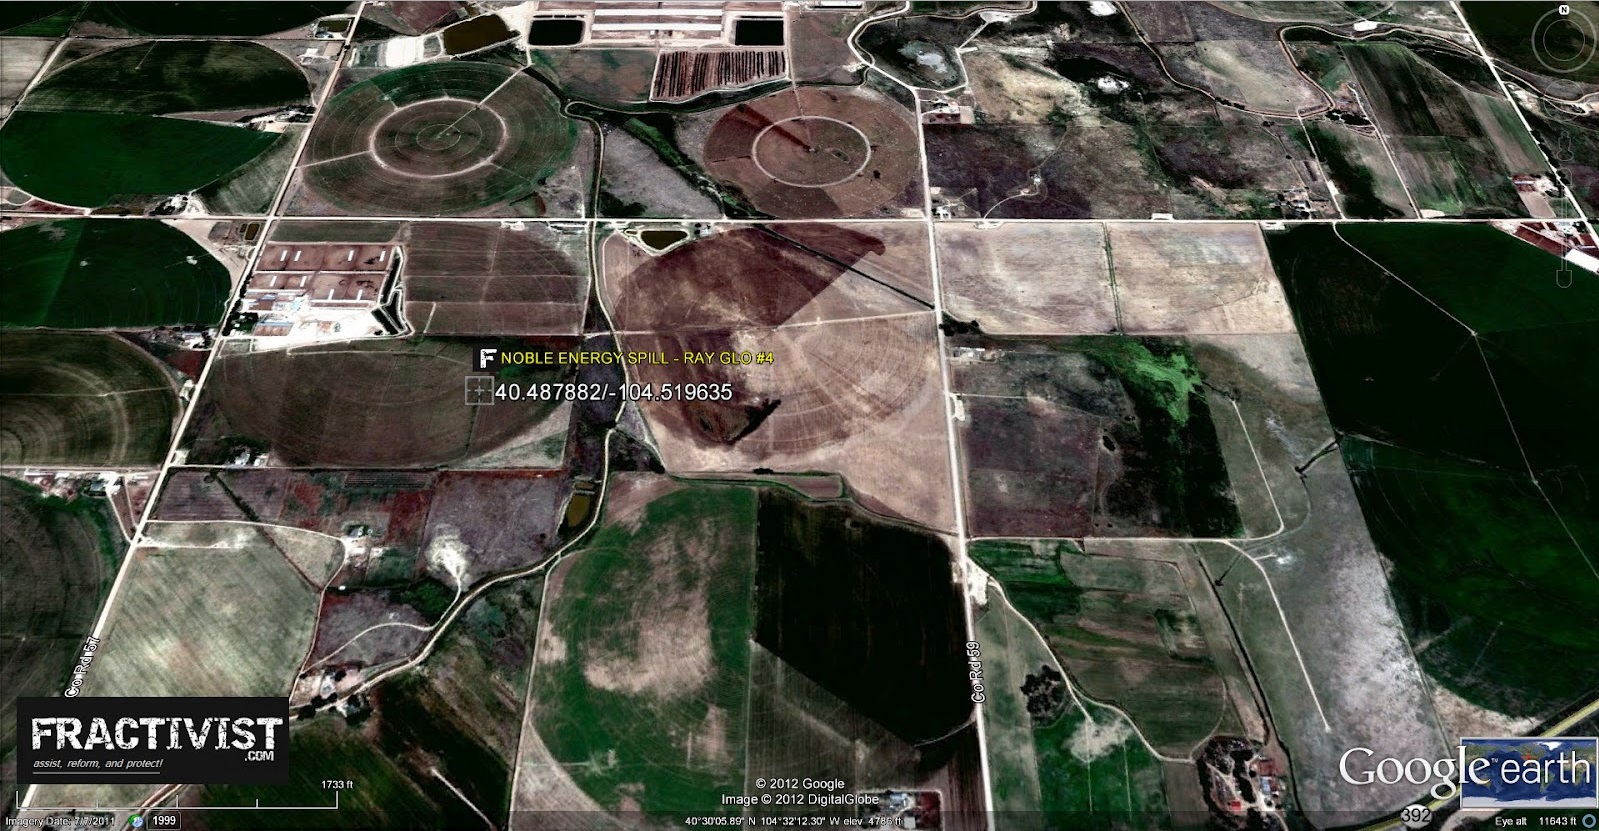 Kontaminierte Böden nach Fracking in Colorado (USA)